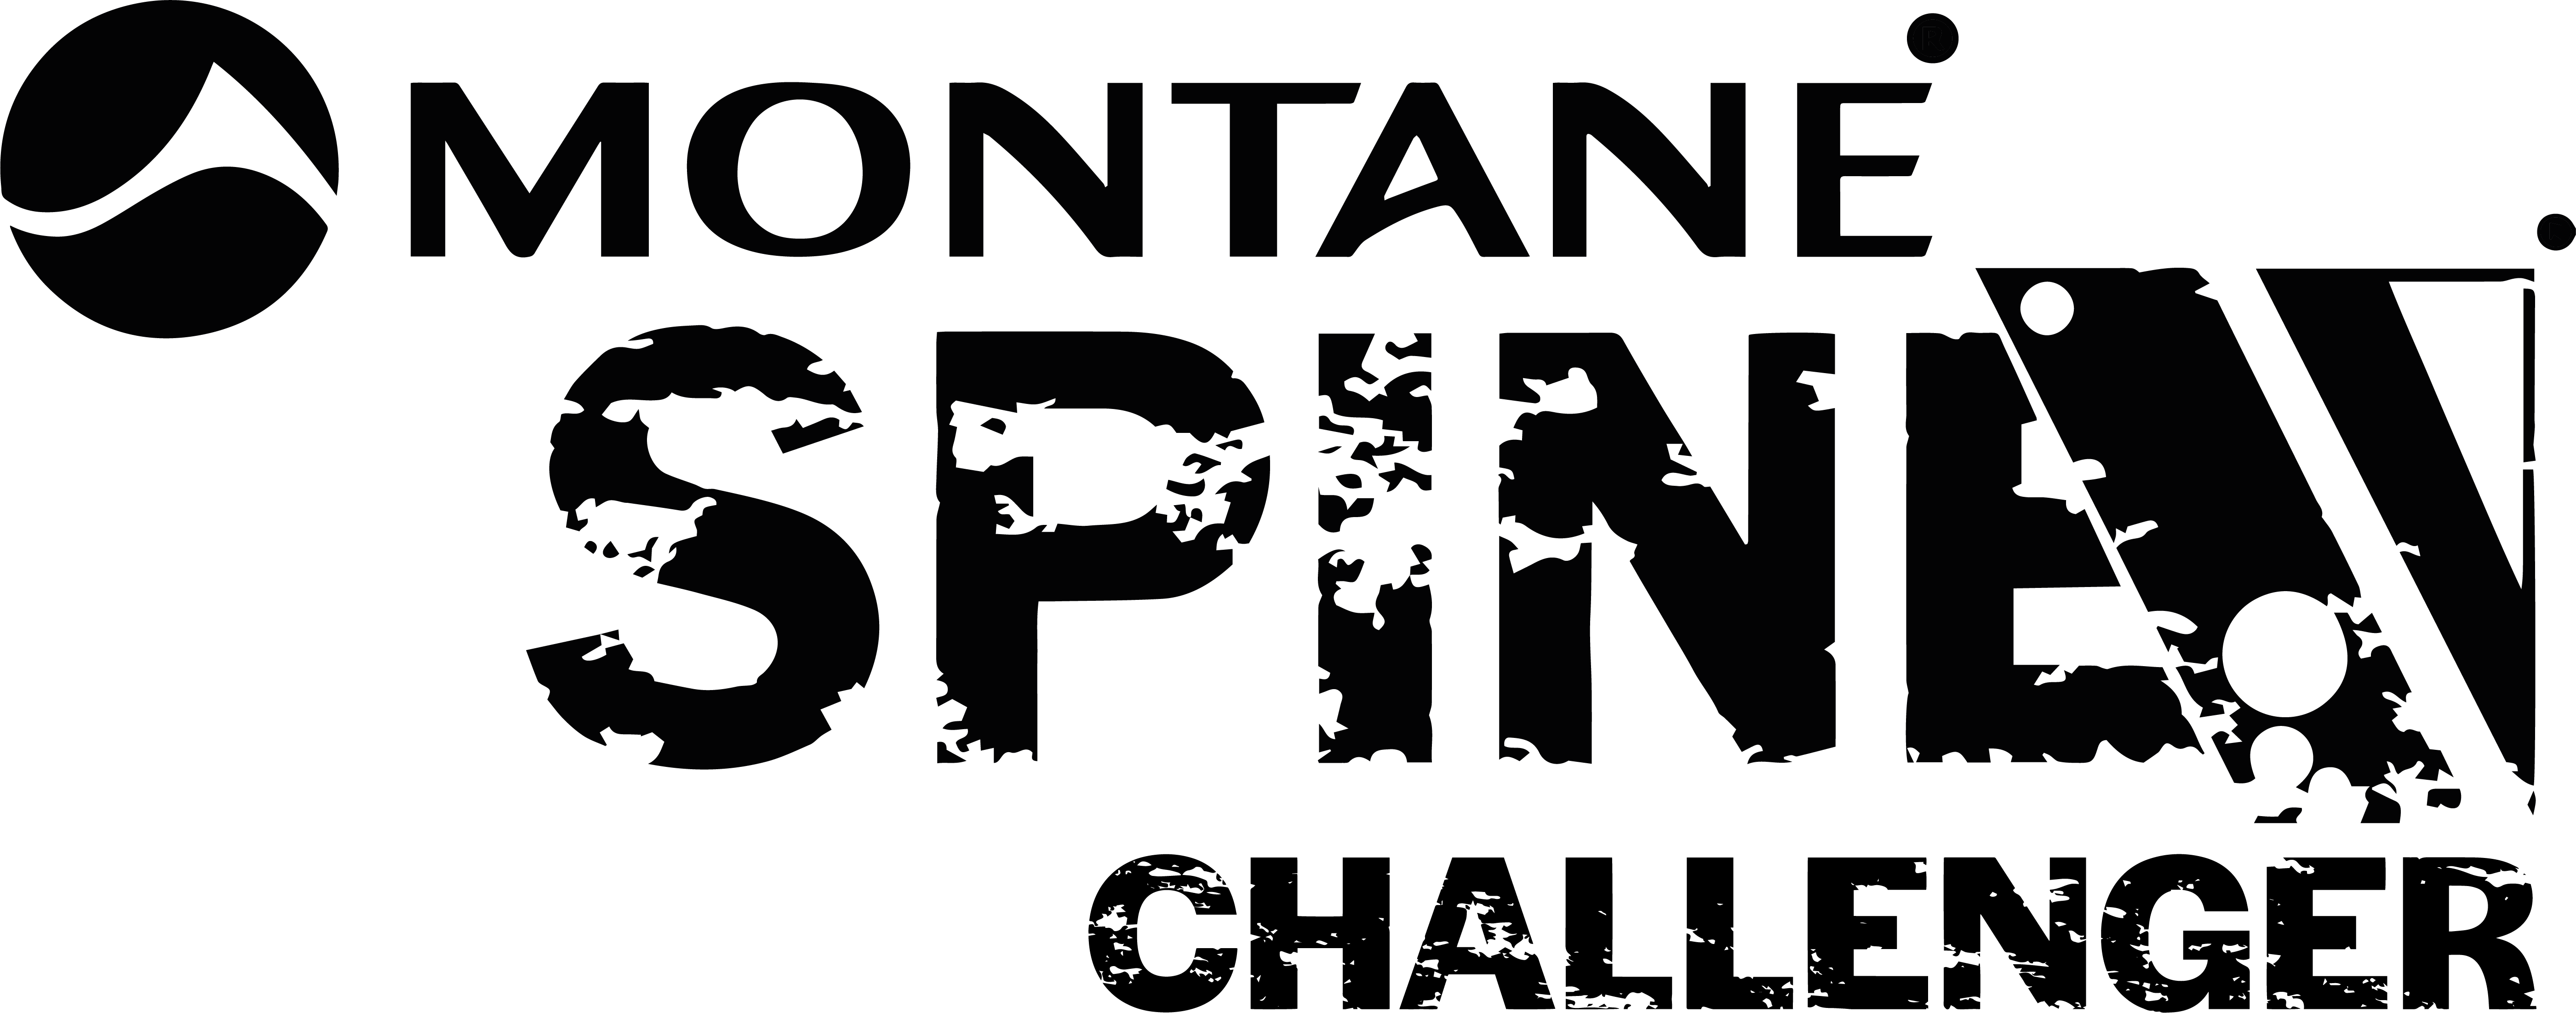 Montane Spine Challenger | MRT 2022